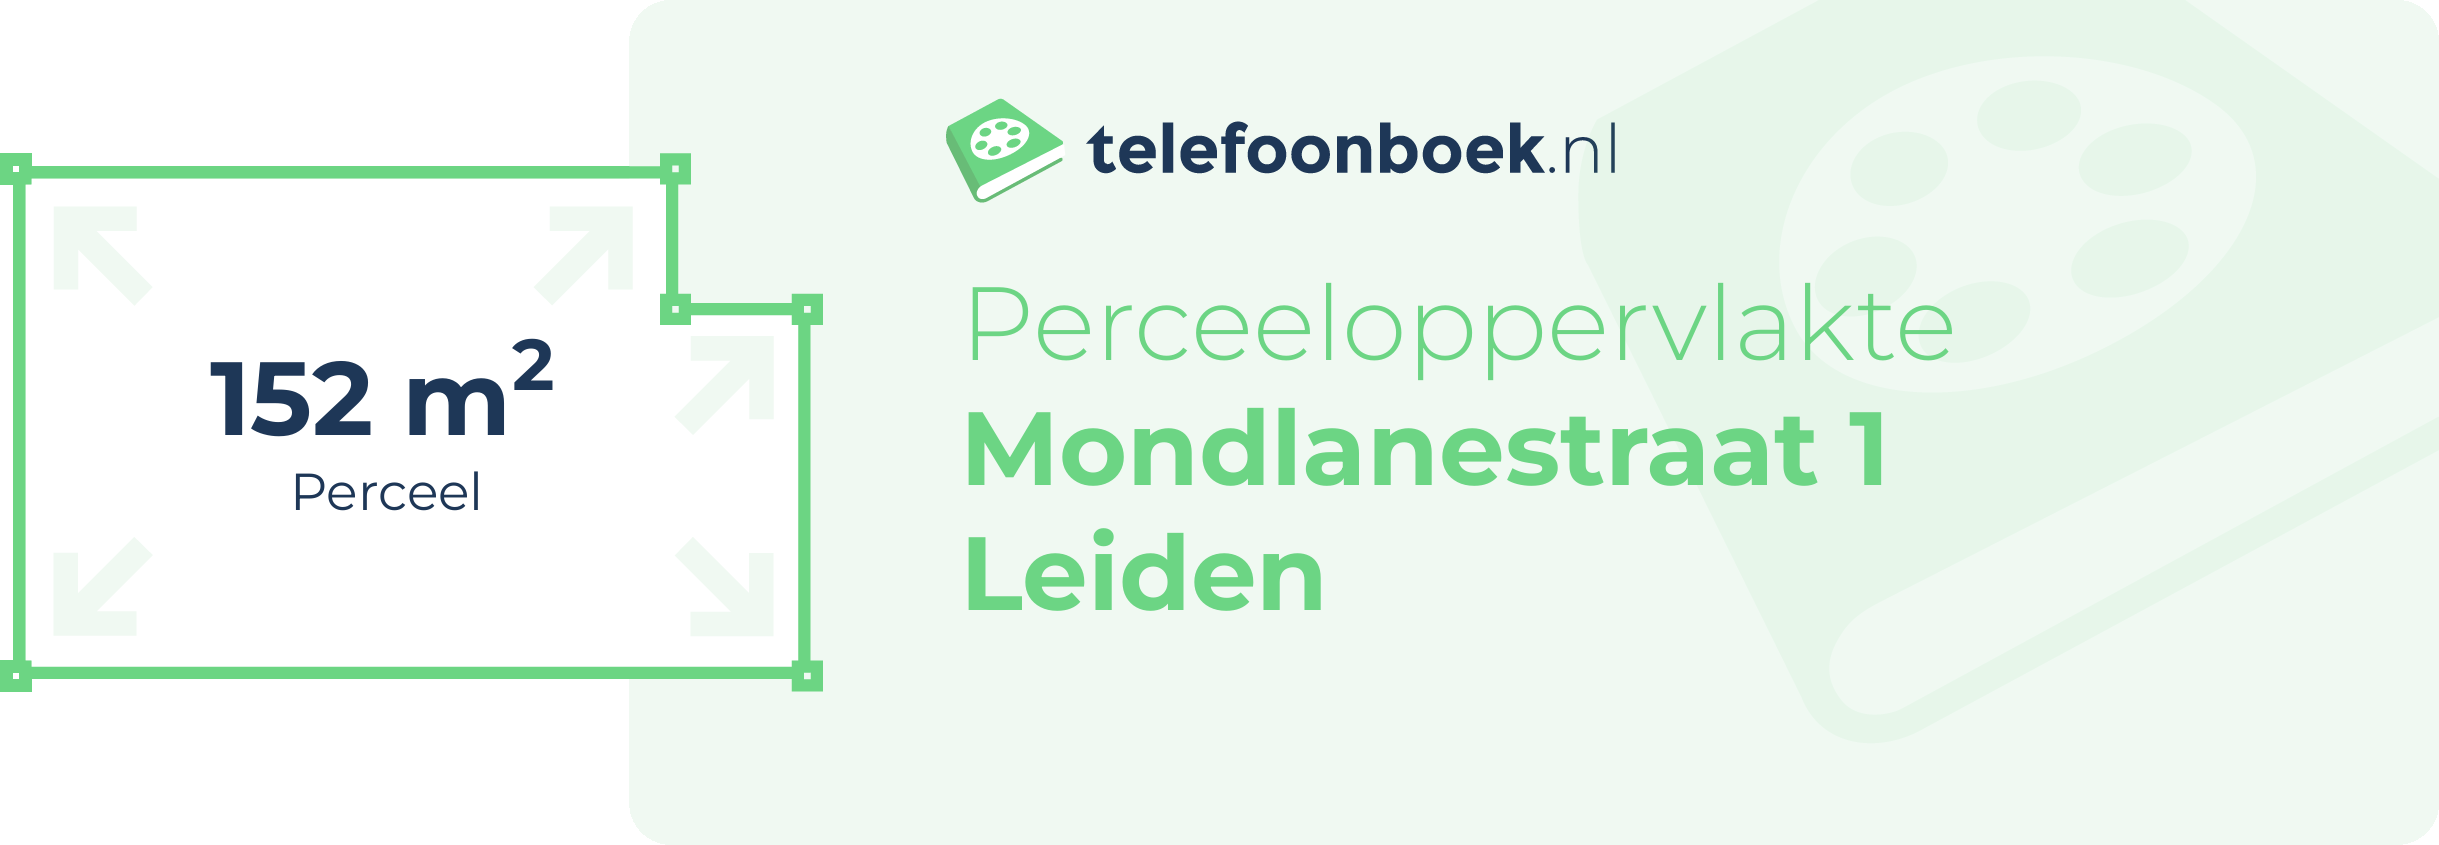 Perceeloppervlakte Mondlanestraat 1 Leiden